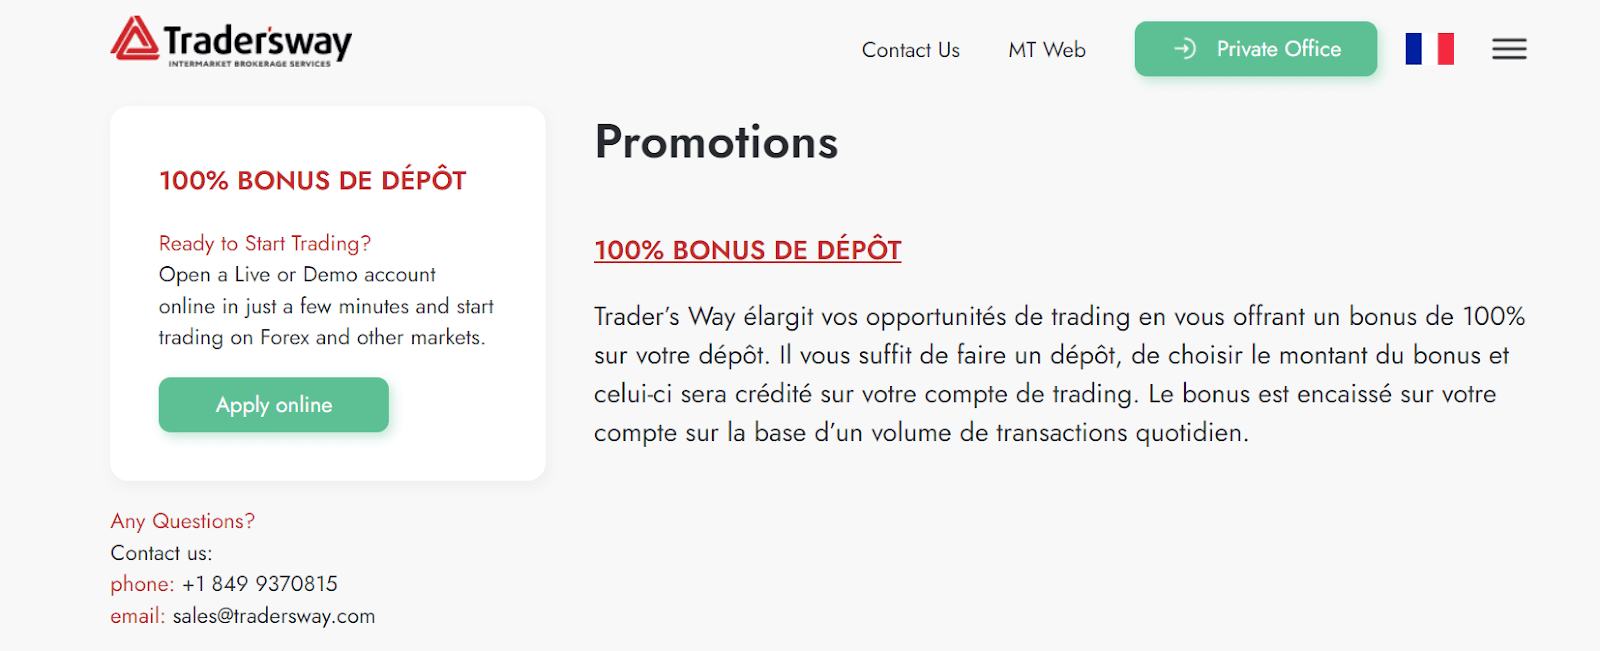 Bonus Trader's Way - Bonus de dépôt de 100%